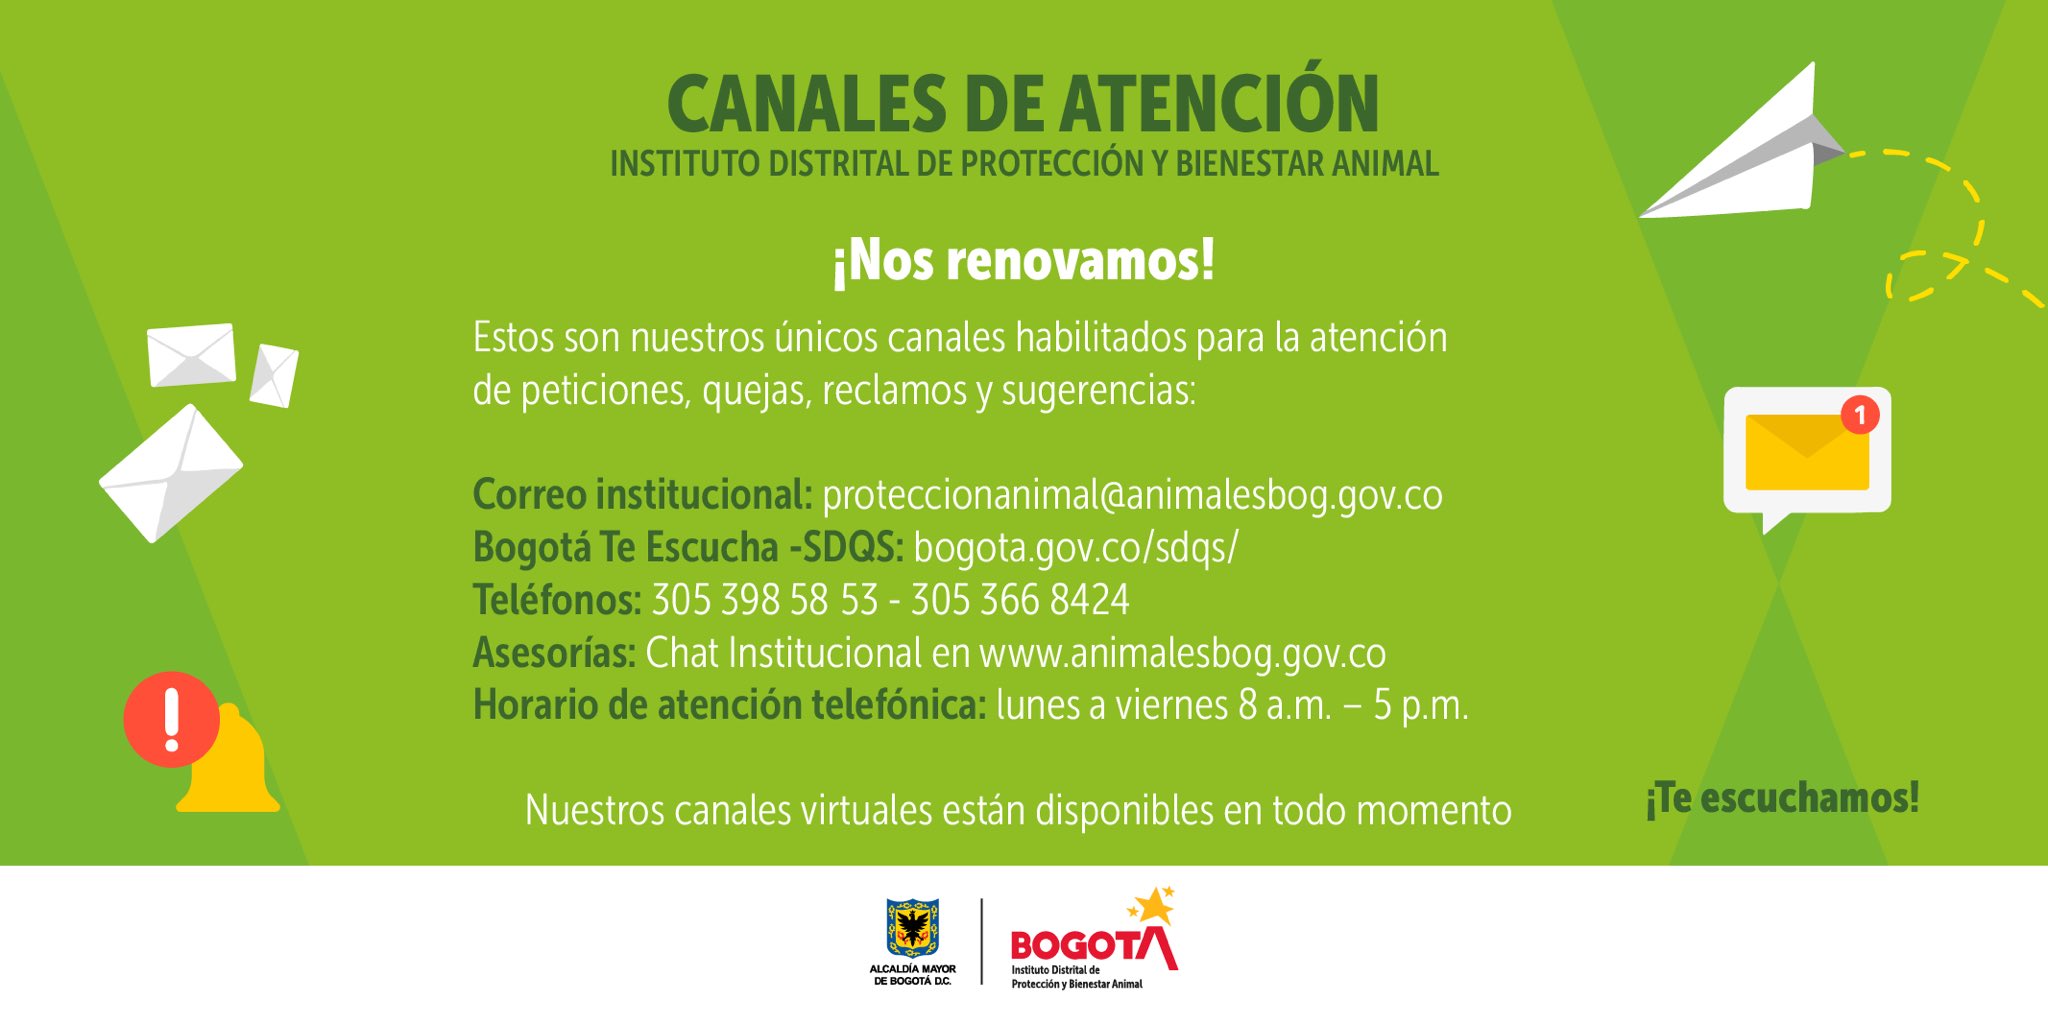 Cómo puedo denunciar el maltrato animal en Bogotá? 